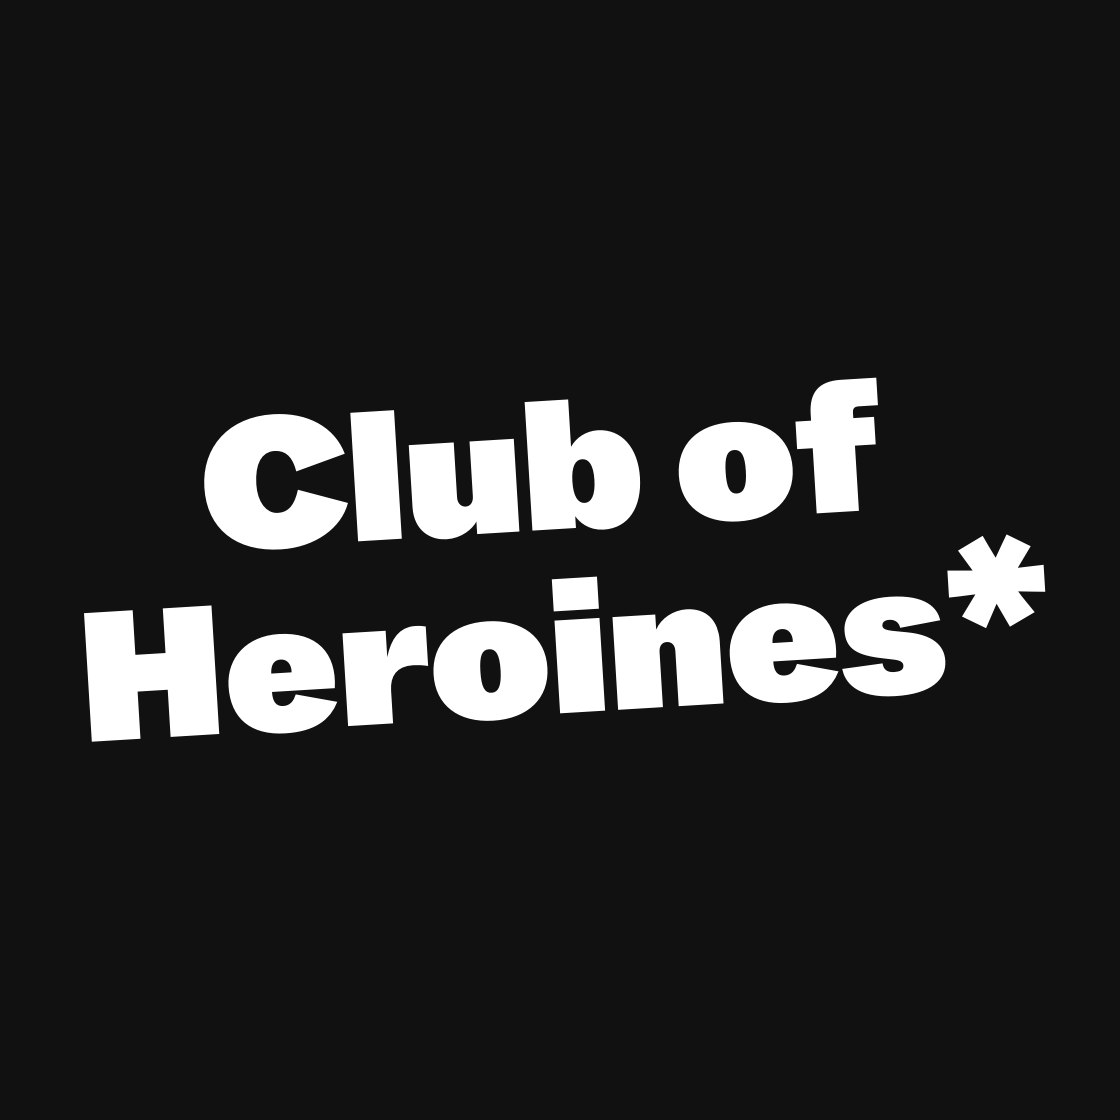 Club of Heroines*